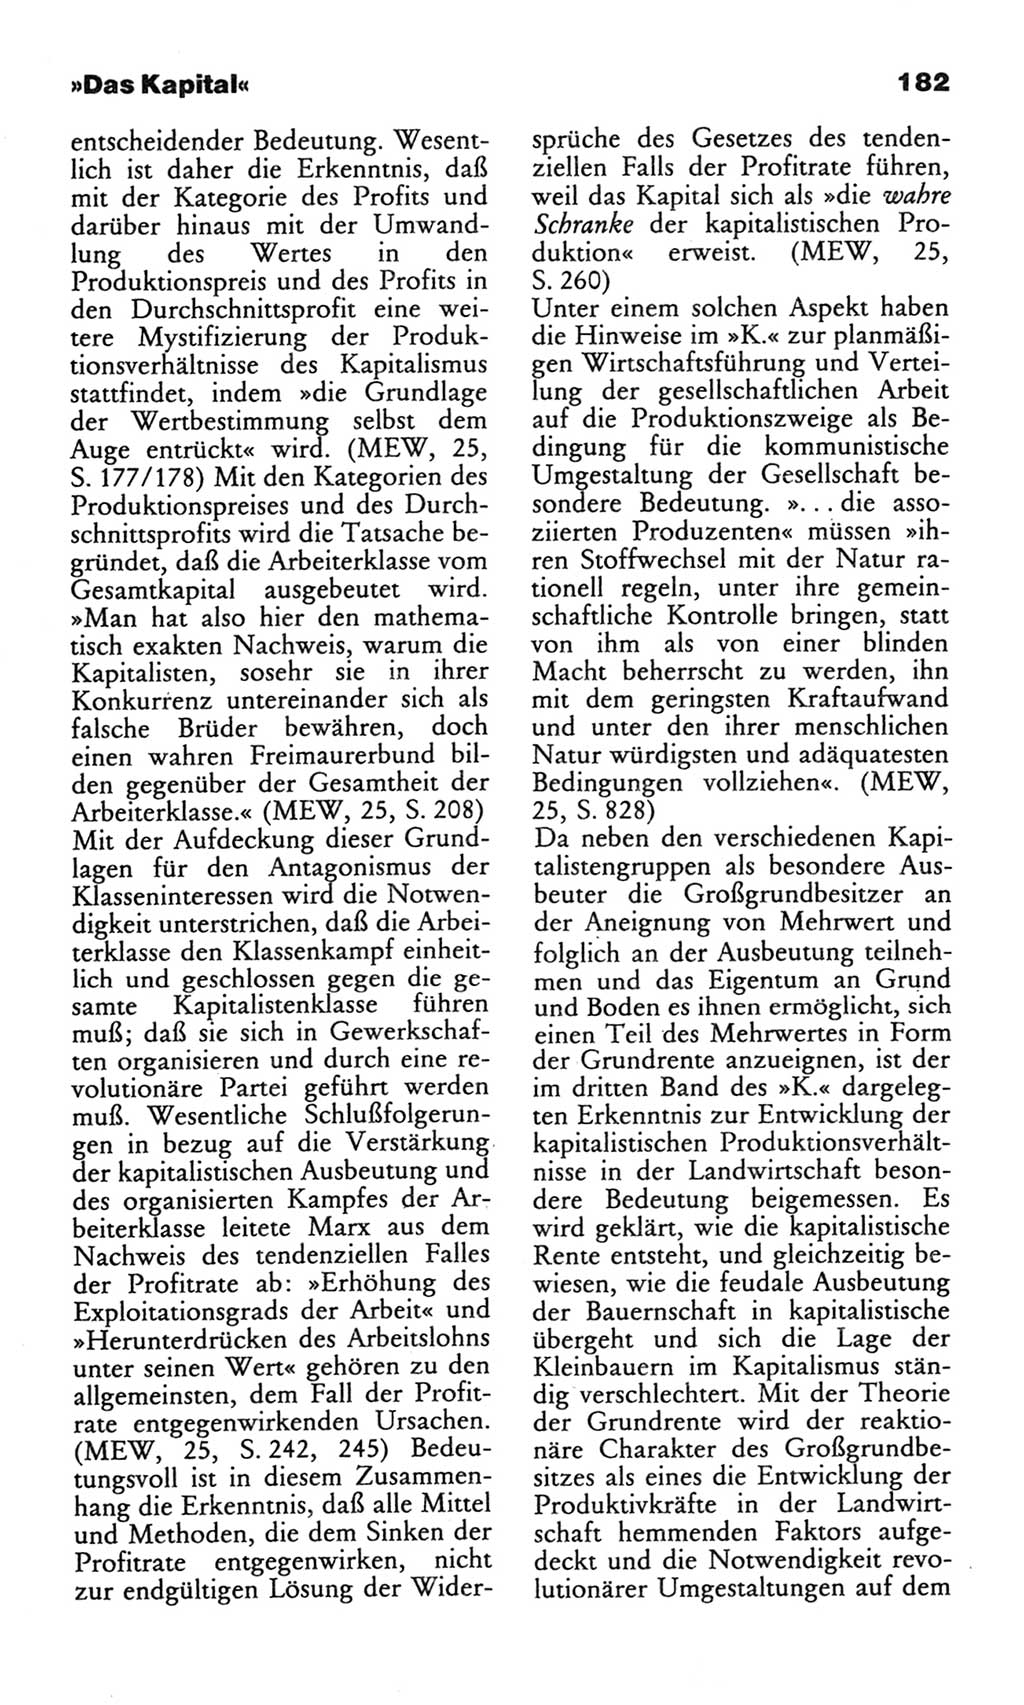 Wörterbuch des wissenschaftlichen Kommunismus [Deutsche Demokratische Republik (DDR)] 1982, Seite 182 (Wb. wiss. Komm. DDR 1982, S. 182)